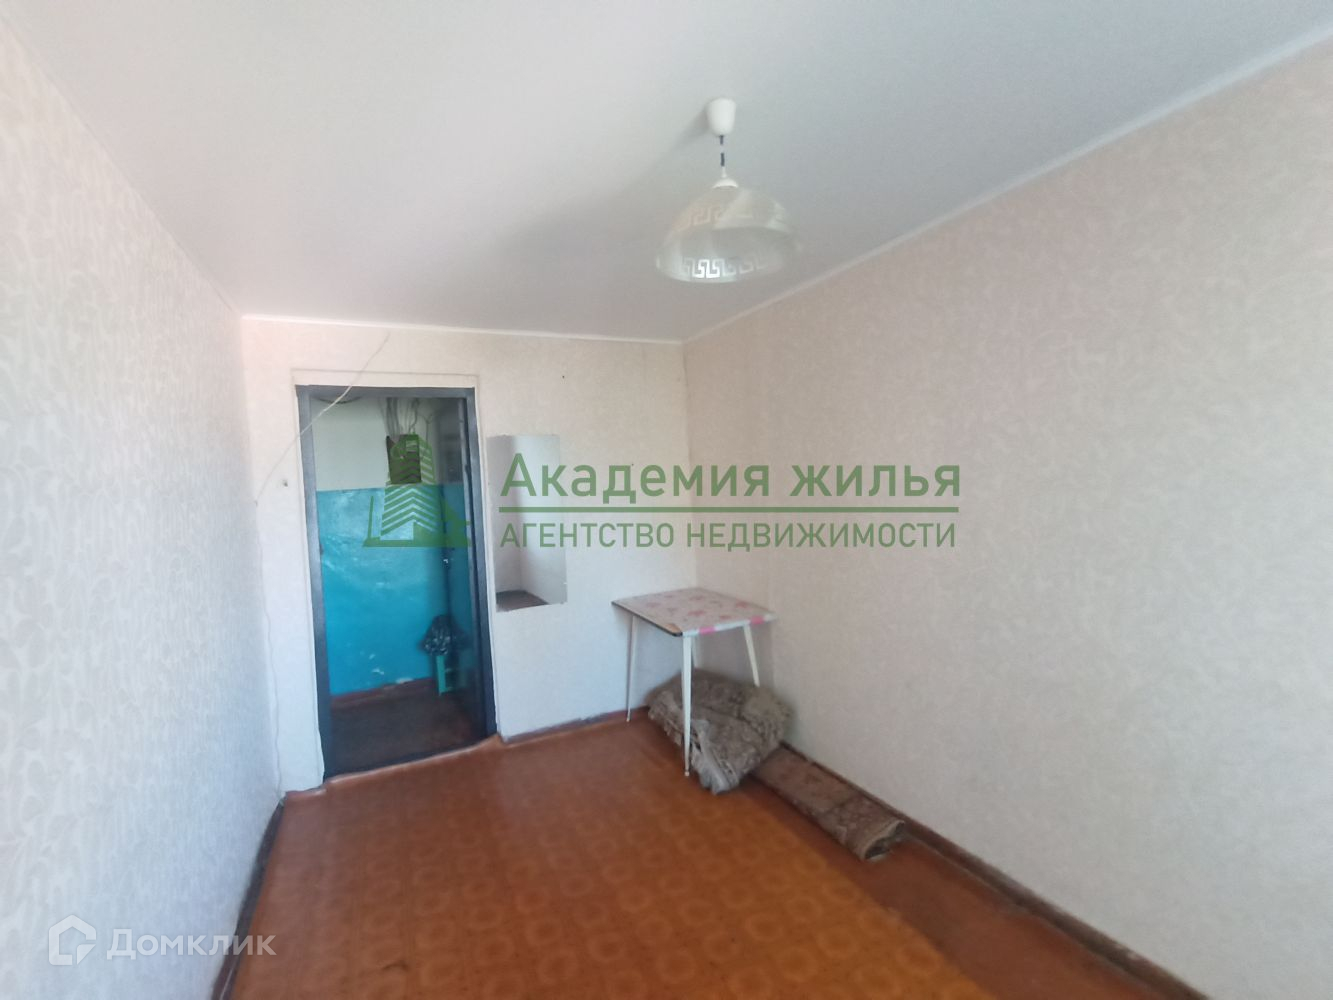 Саратов ленинский район сниму комнату от хозяина